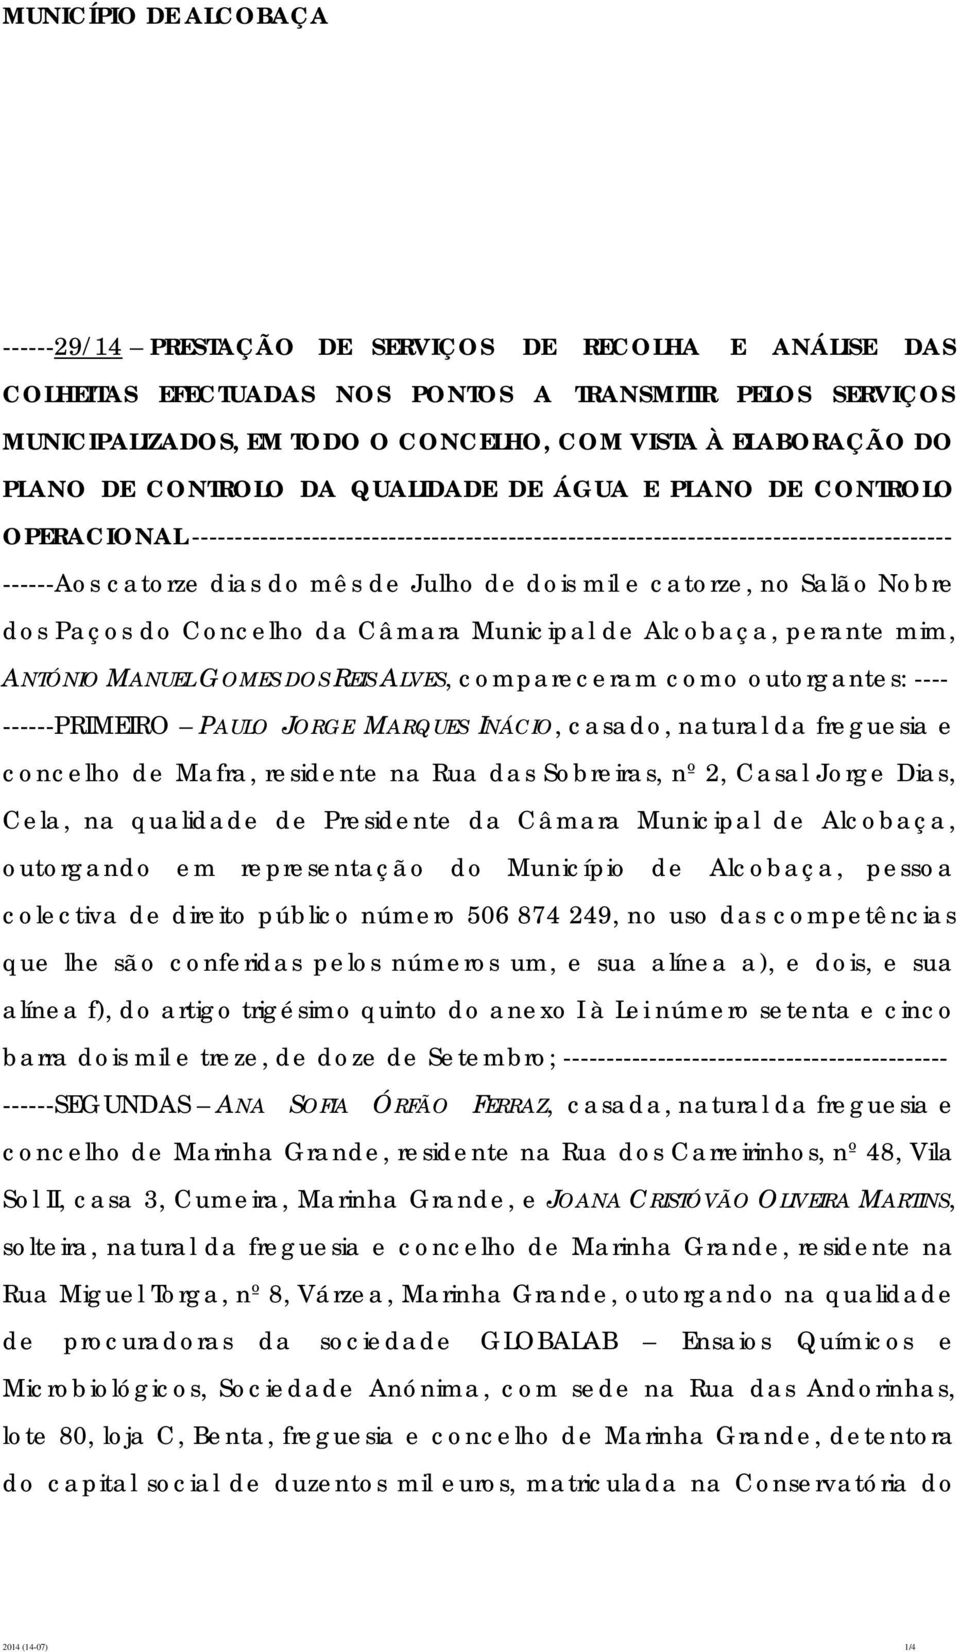 catorze, no Salão Nobre dos Paços do Concelho da Câmara Municipal de Alcobaça, perante mim, ANTÓNIO MANUEL GOMES DOS REIS ALVES, compareceram como outorgantes: ---- ------PRIMEIRO PAULO JORGE MARQUES